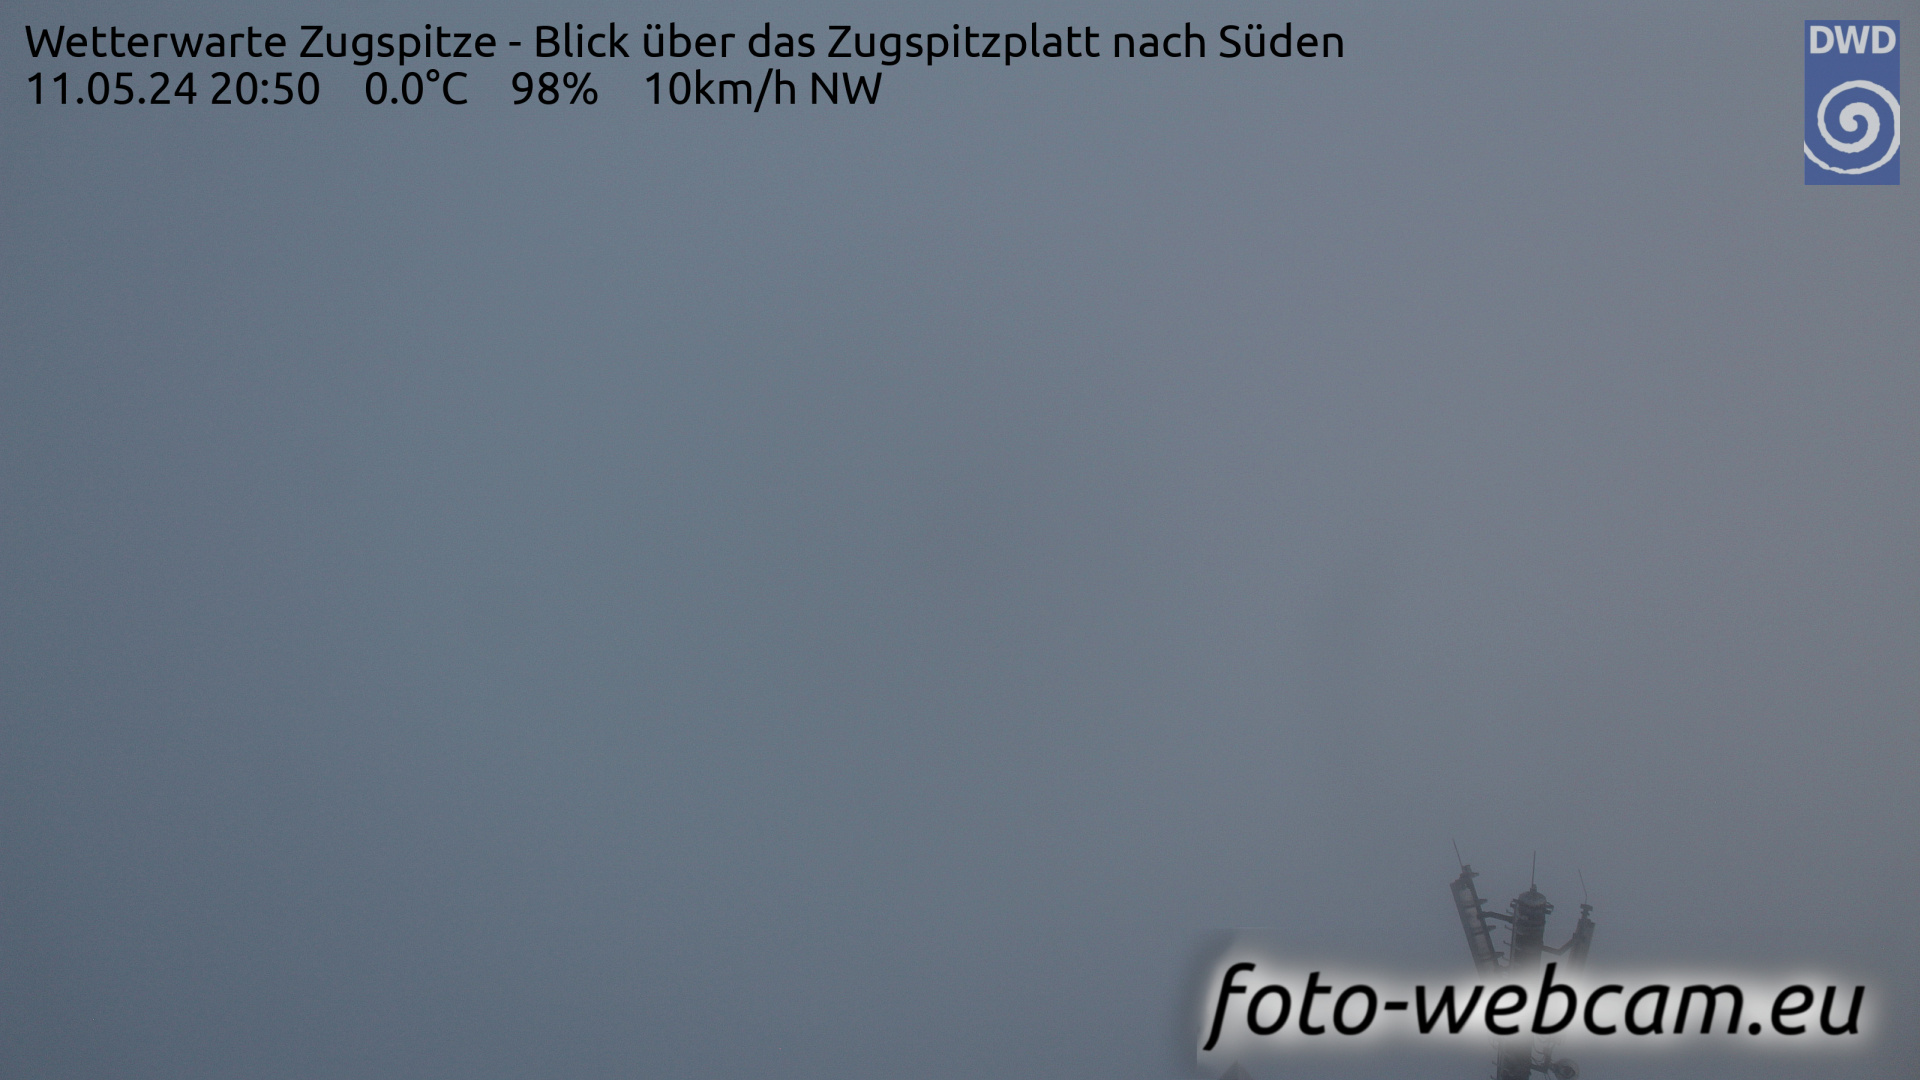 Zugspitze Wed. 20:54